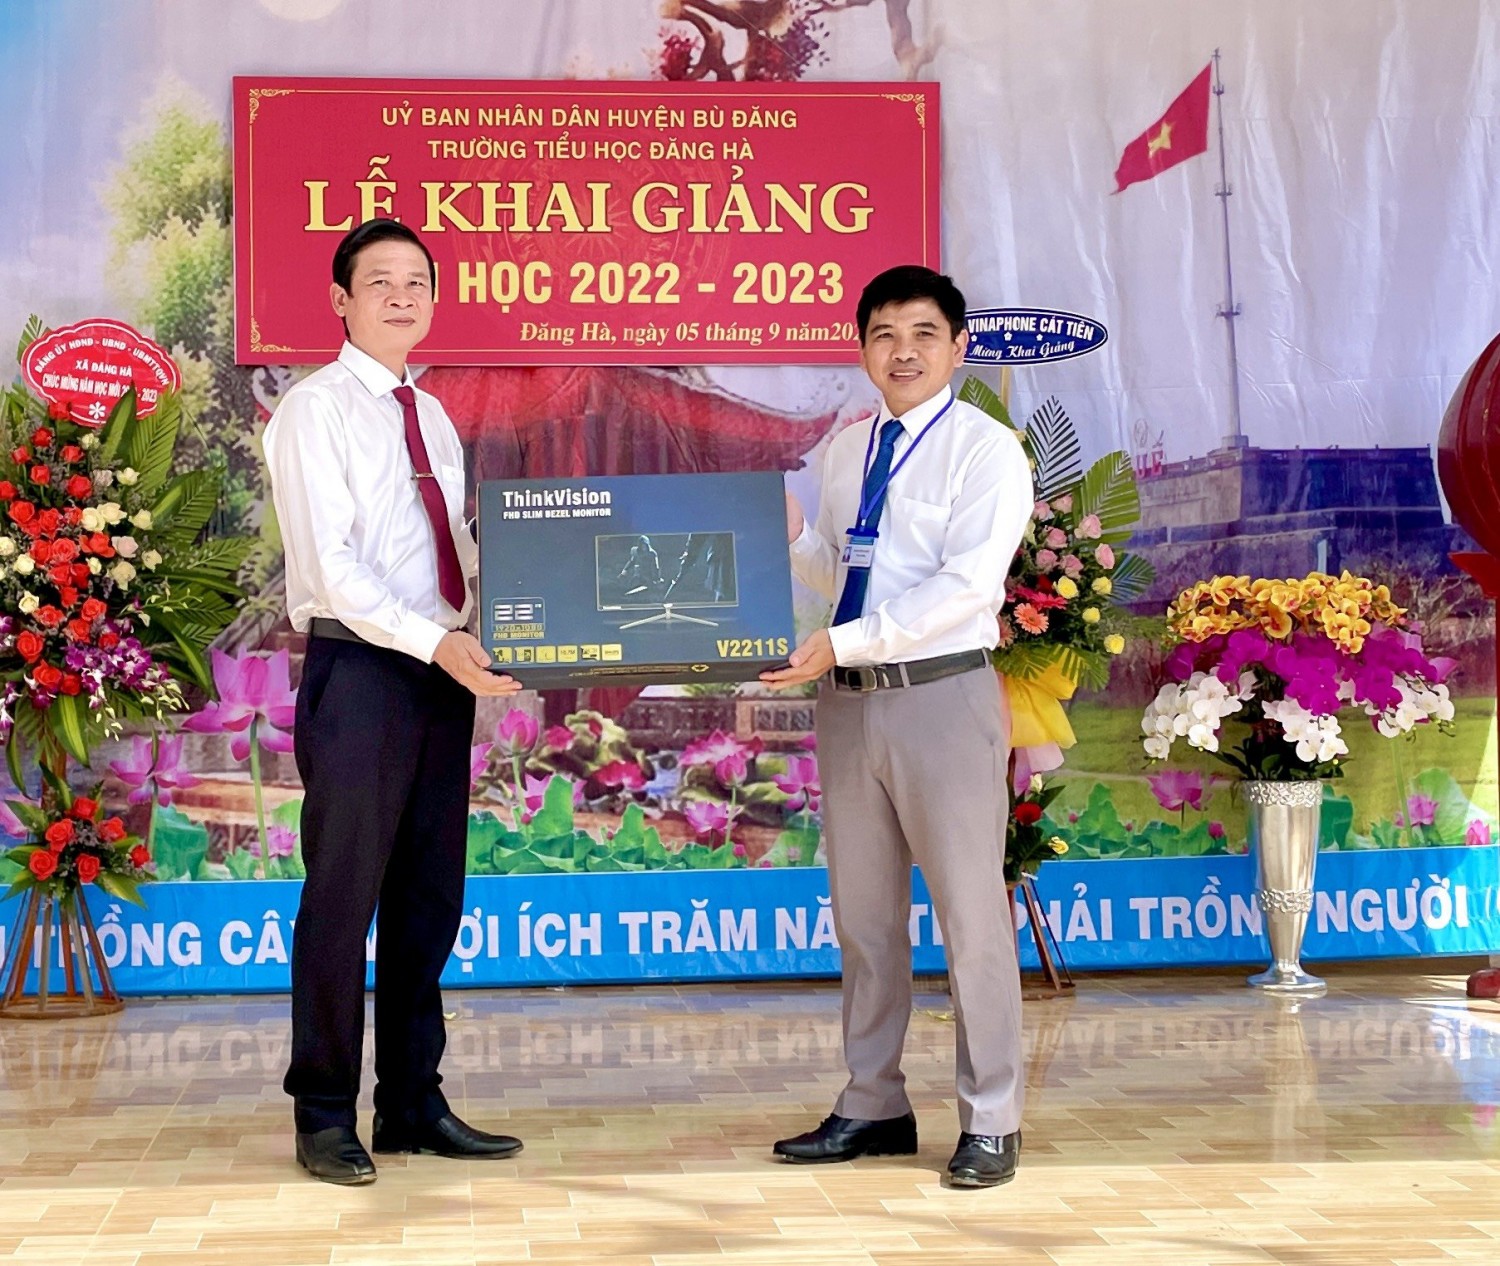 TUV, Bí thư Huyện ủy Bù Đăng Vũ Lương trao tặng máy tính cho trường TH Đăng Hà